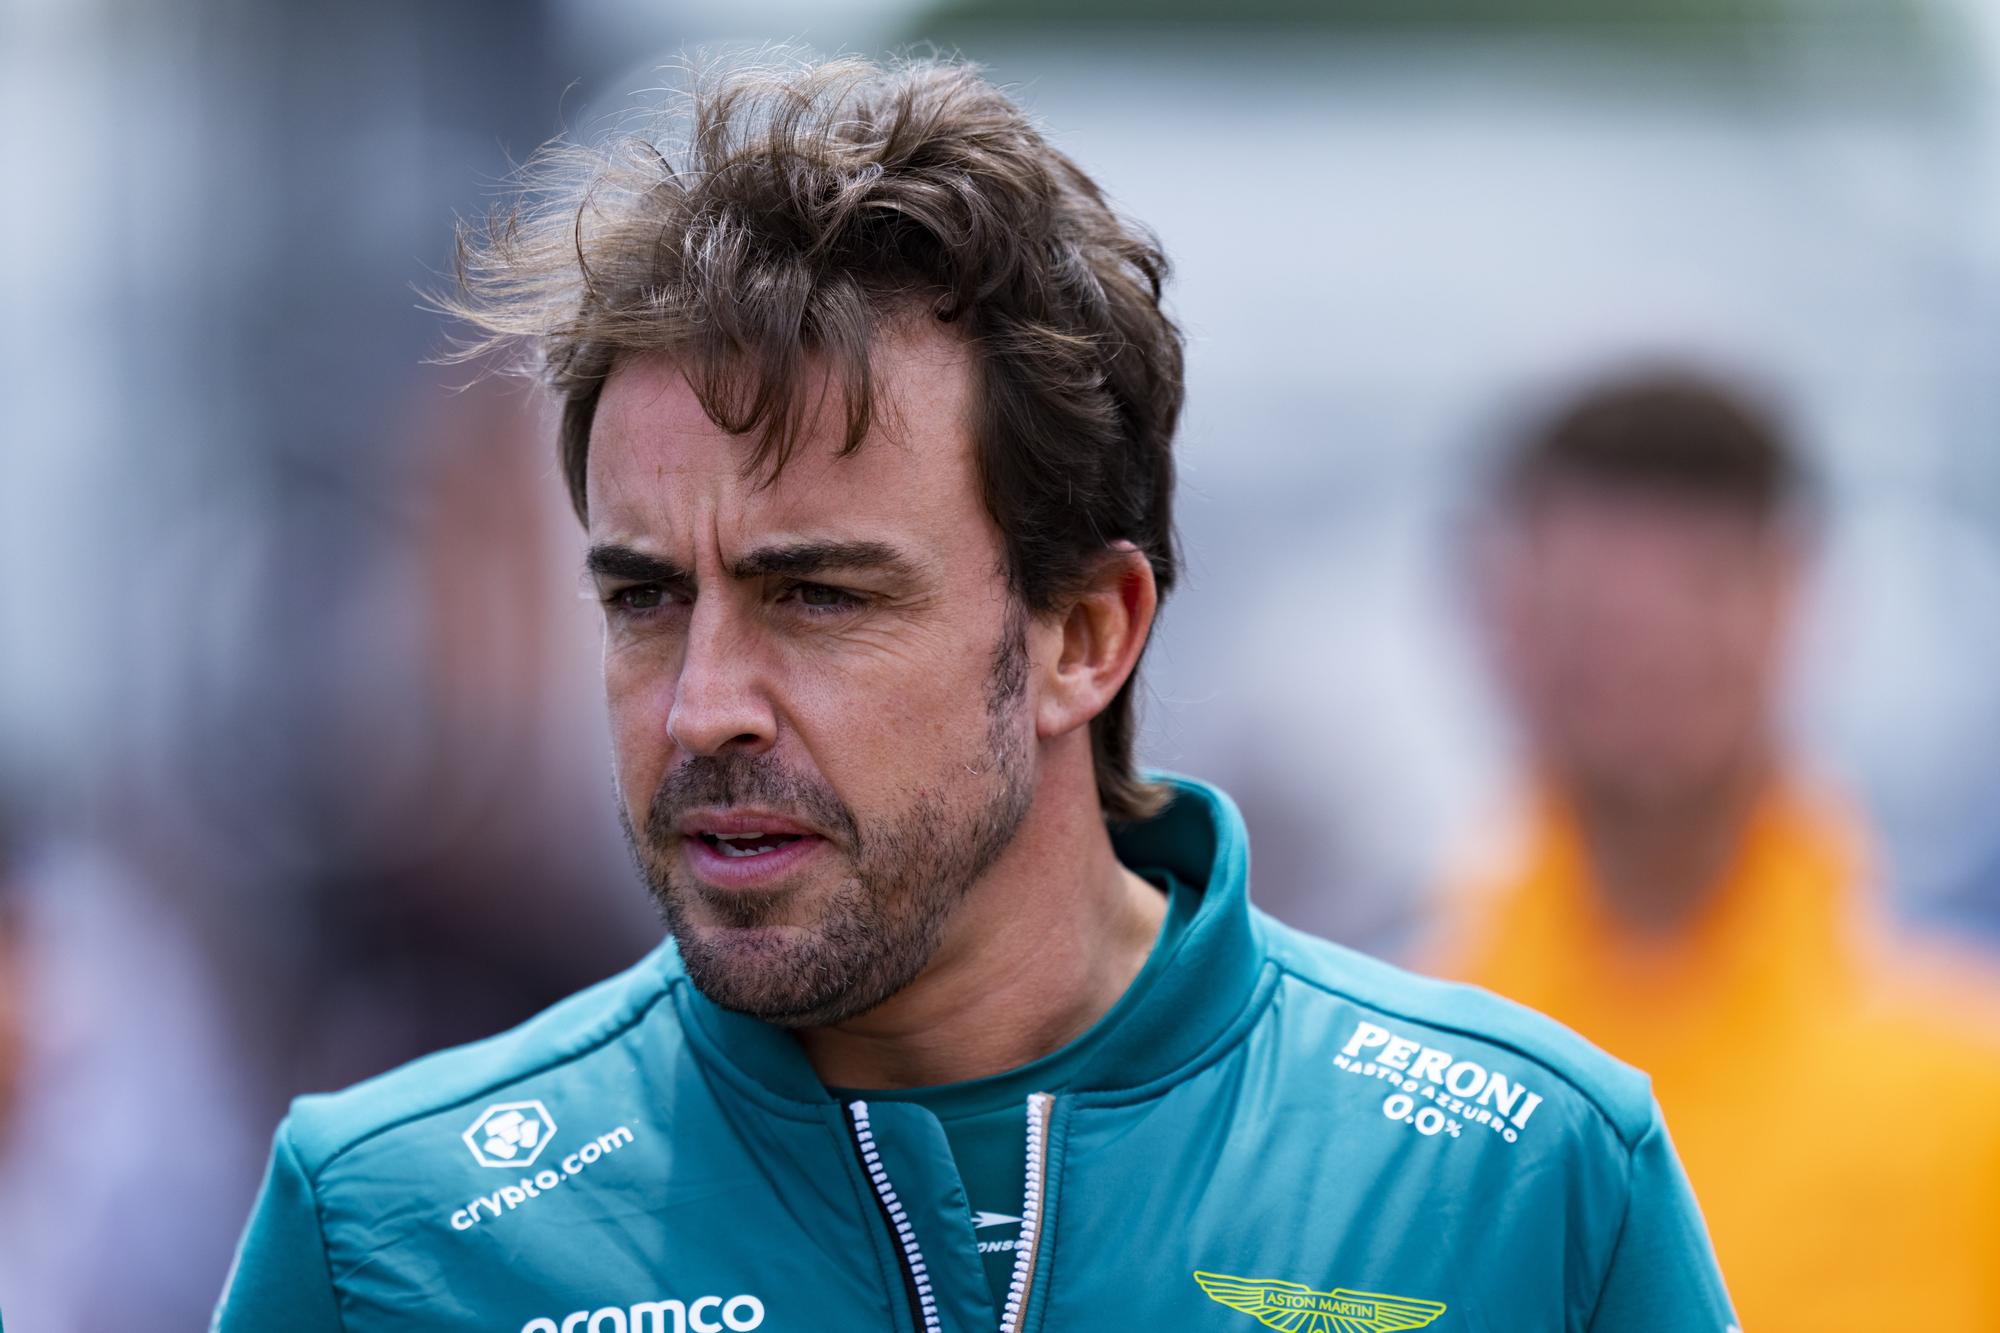 Gran Premio de España de Fórmula 1 Fernando Alonso